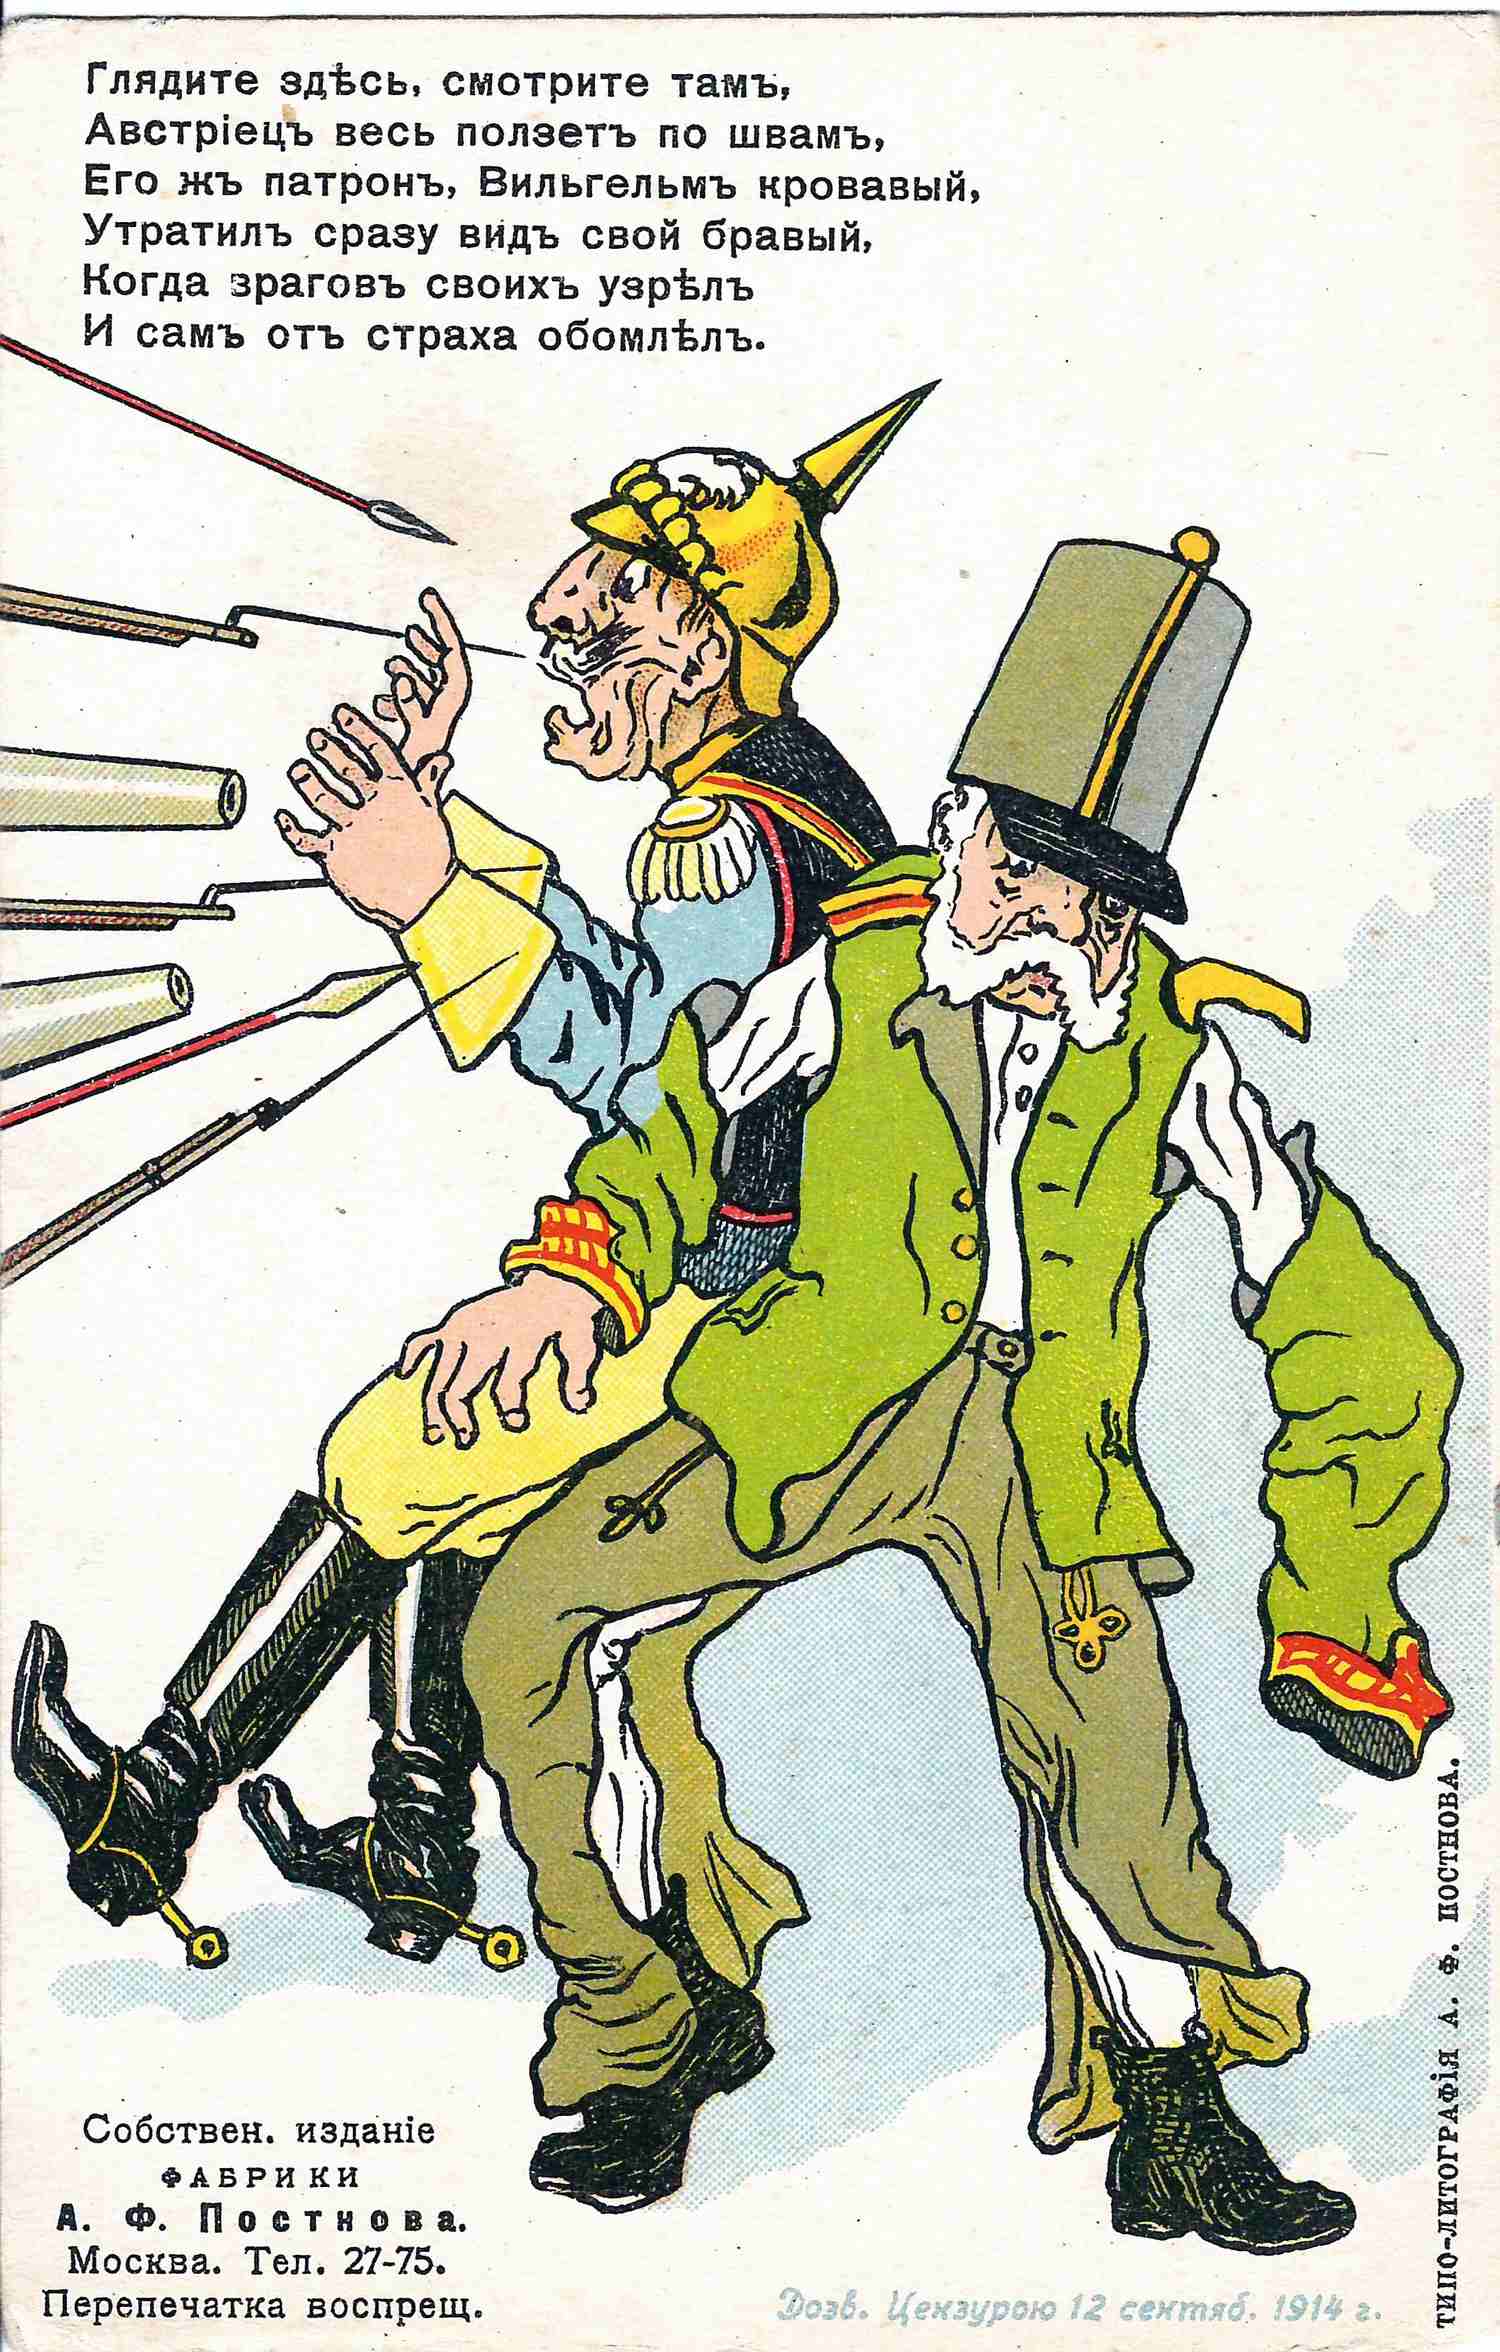 Открытка «Глядите здесь, смотрите там…» Издание А.Ф. Постнова, 1914.